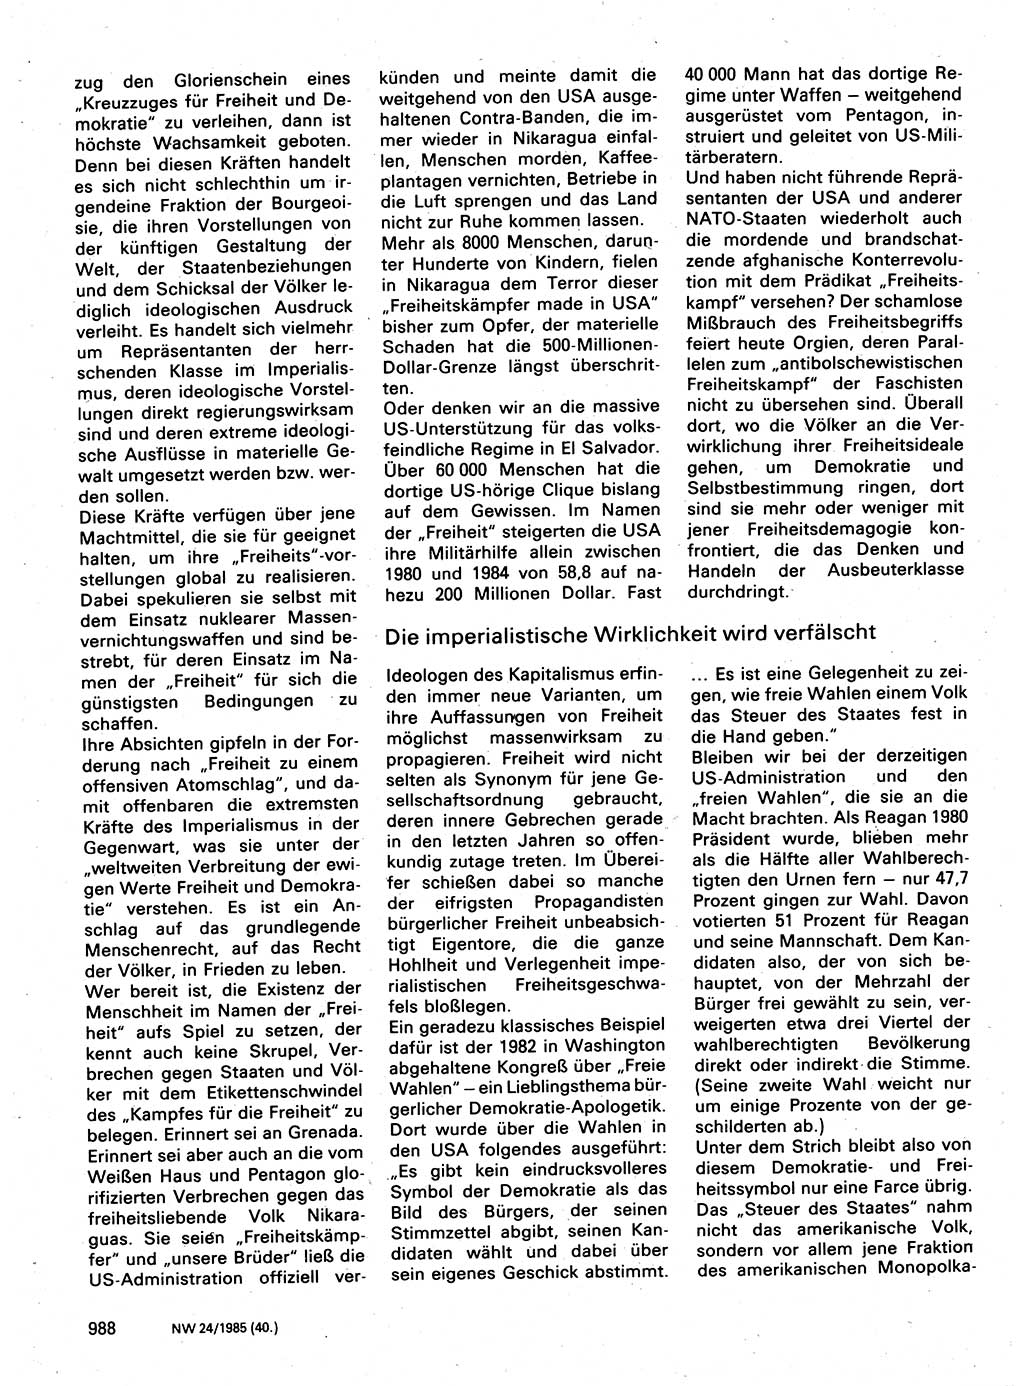 Neuer Weg (NW), Organ des Zentralkomitees (ZK) der SED (Sozialistische Einheitspartei Deutschlands) für Fragen des Parteilebens, 40. Jahrgang [Deutsche Demokratische Republik (DDR)] 1985, Seite 988 (NW ZK SED DDR 1985, S. 988)